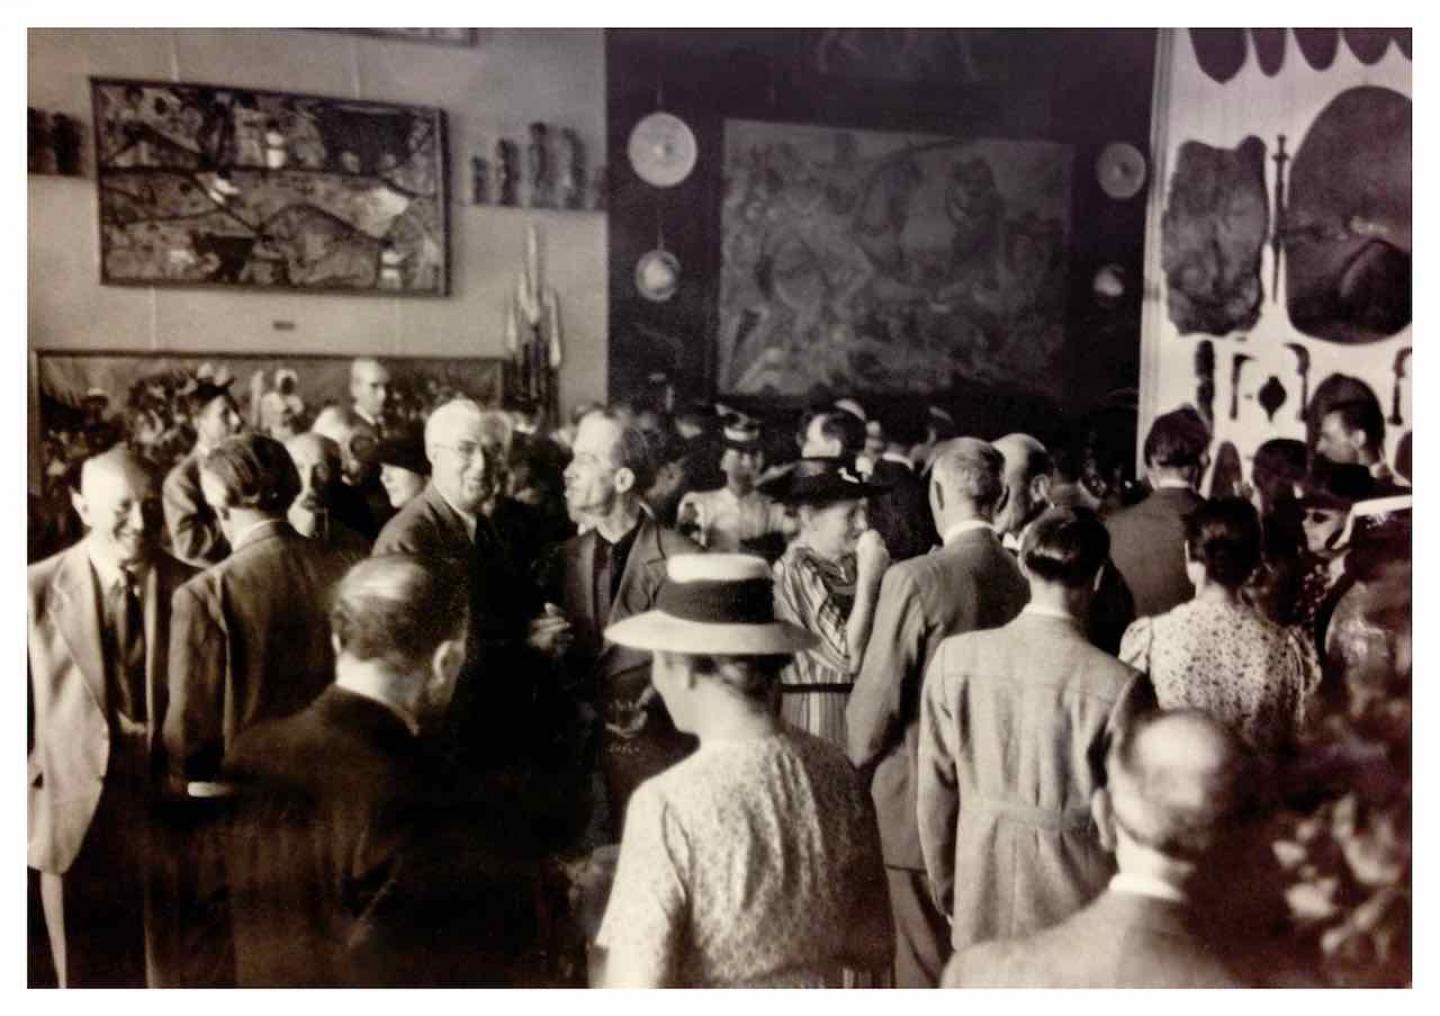  Inauguration du Musée d’ethnographie de Genève au boulevard Carl-Vogt  Photographe inconnu 12 Juillet 1941 Tirage moderne Archives de la Ville de Genève